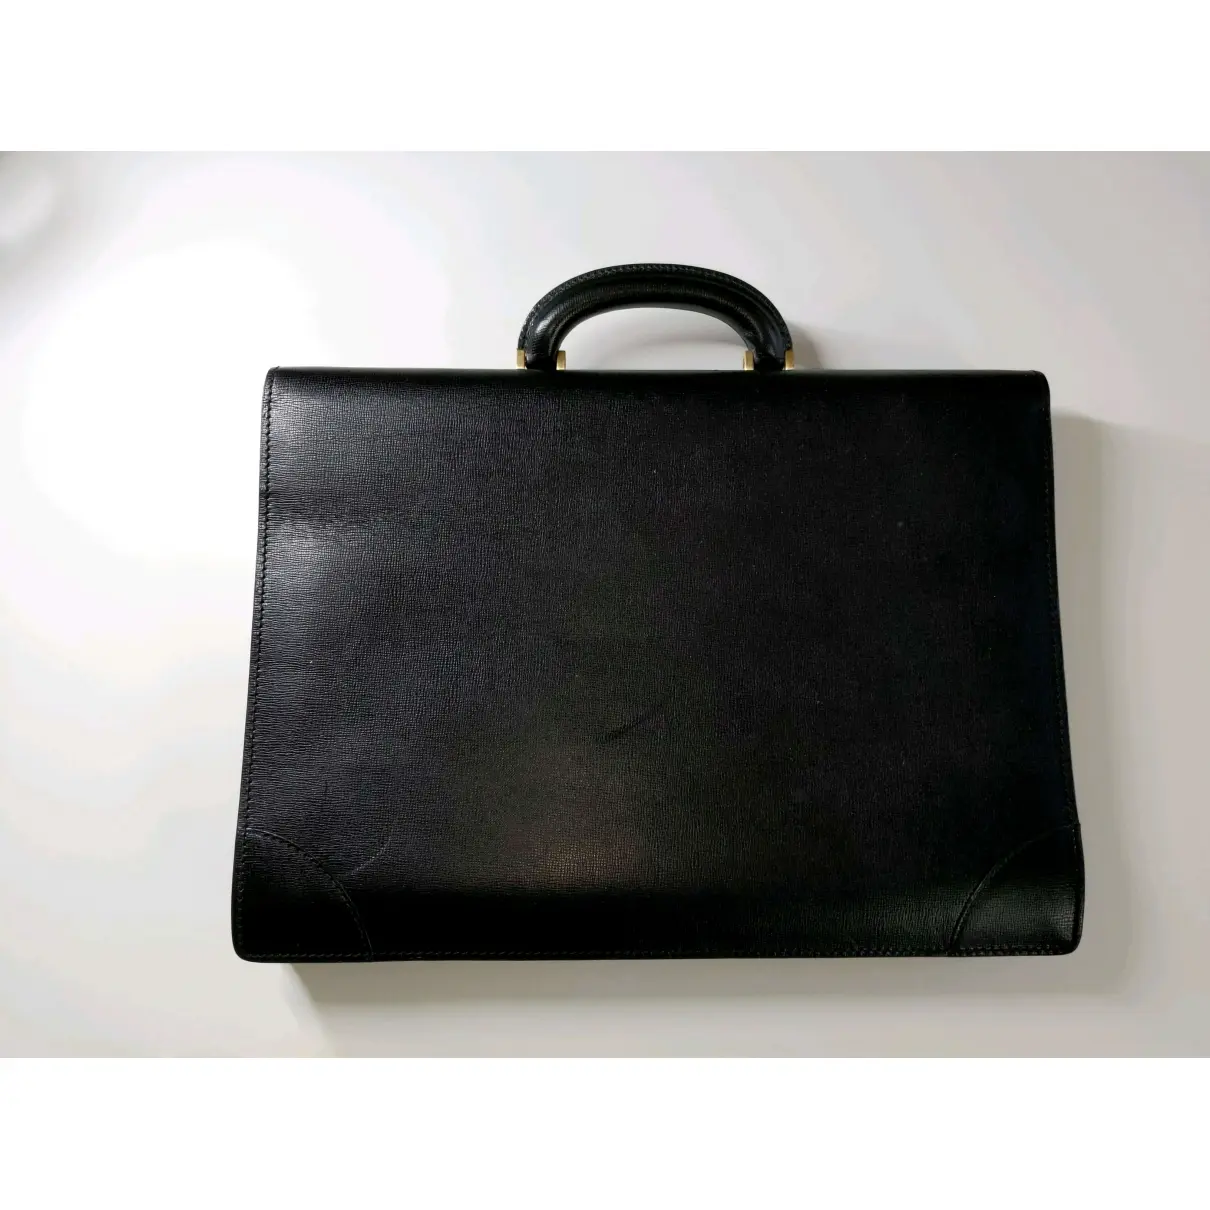 Buy Valextra Leather satchel online